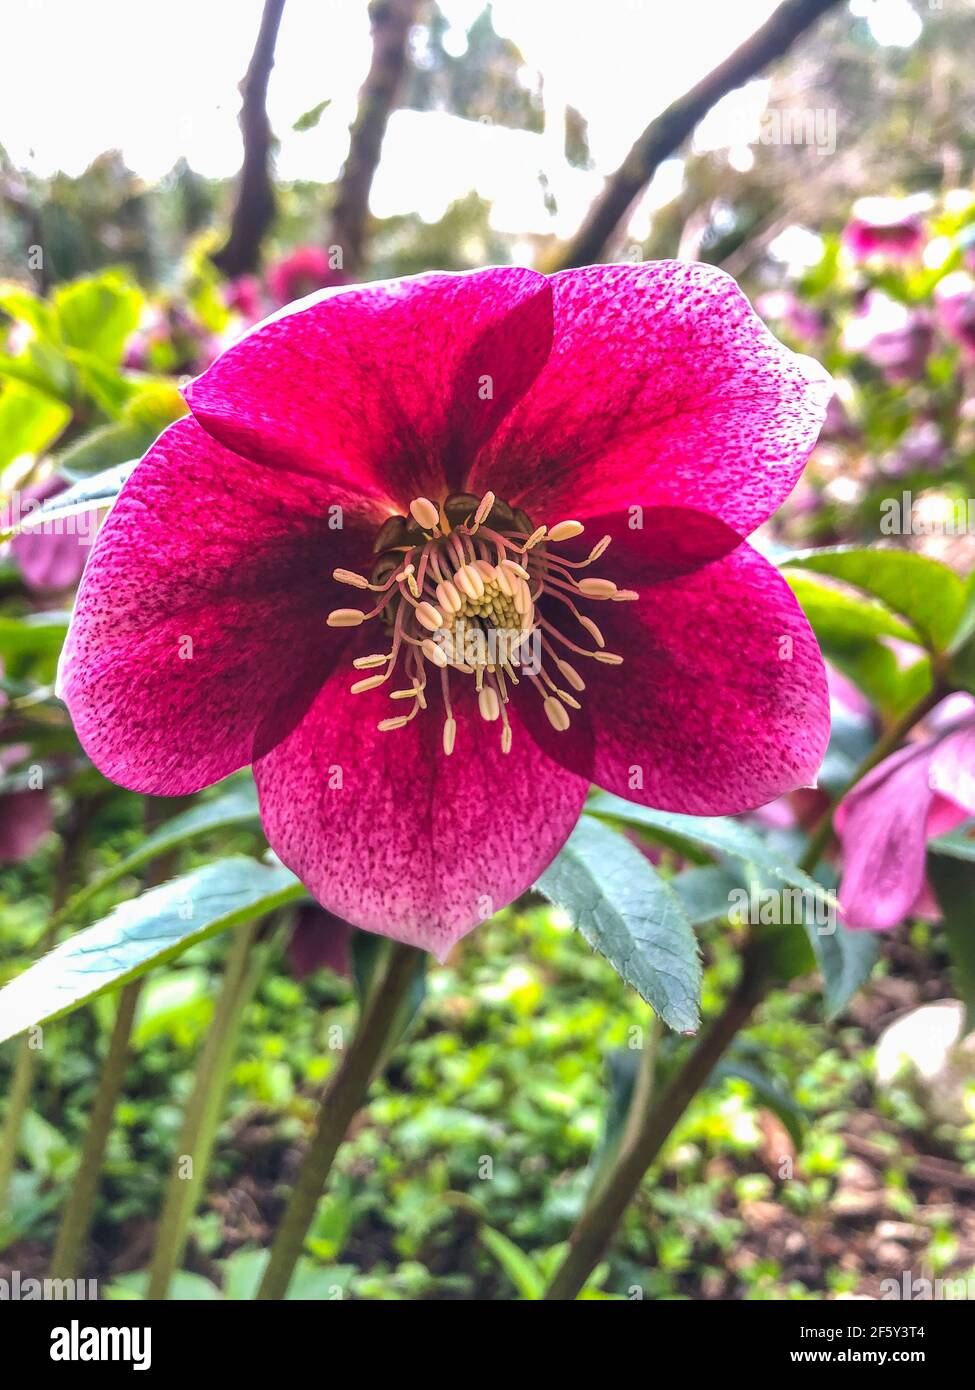 La rose de Lenten (Helleborus orientalis) est une plante à fleurs vivaces et une espèce d'hellebore de la famille des buttercup, Ranunculaceae, originaire de Grèce A. Banque D'Images